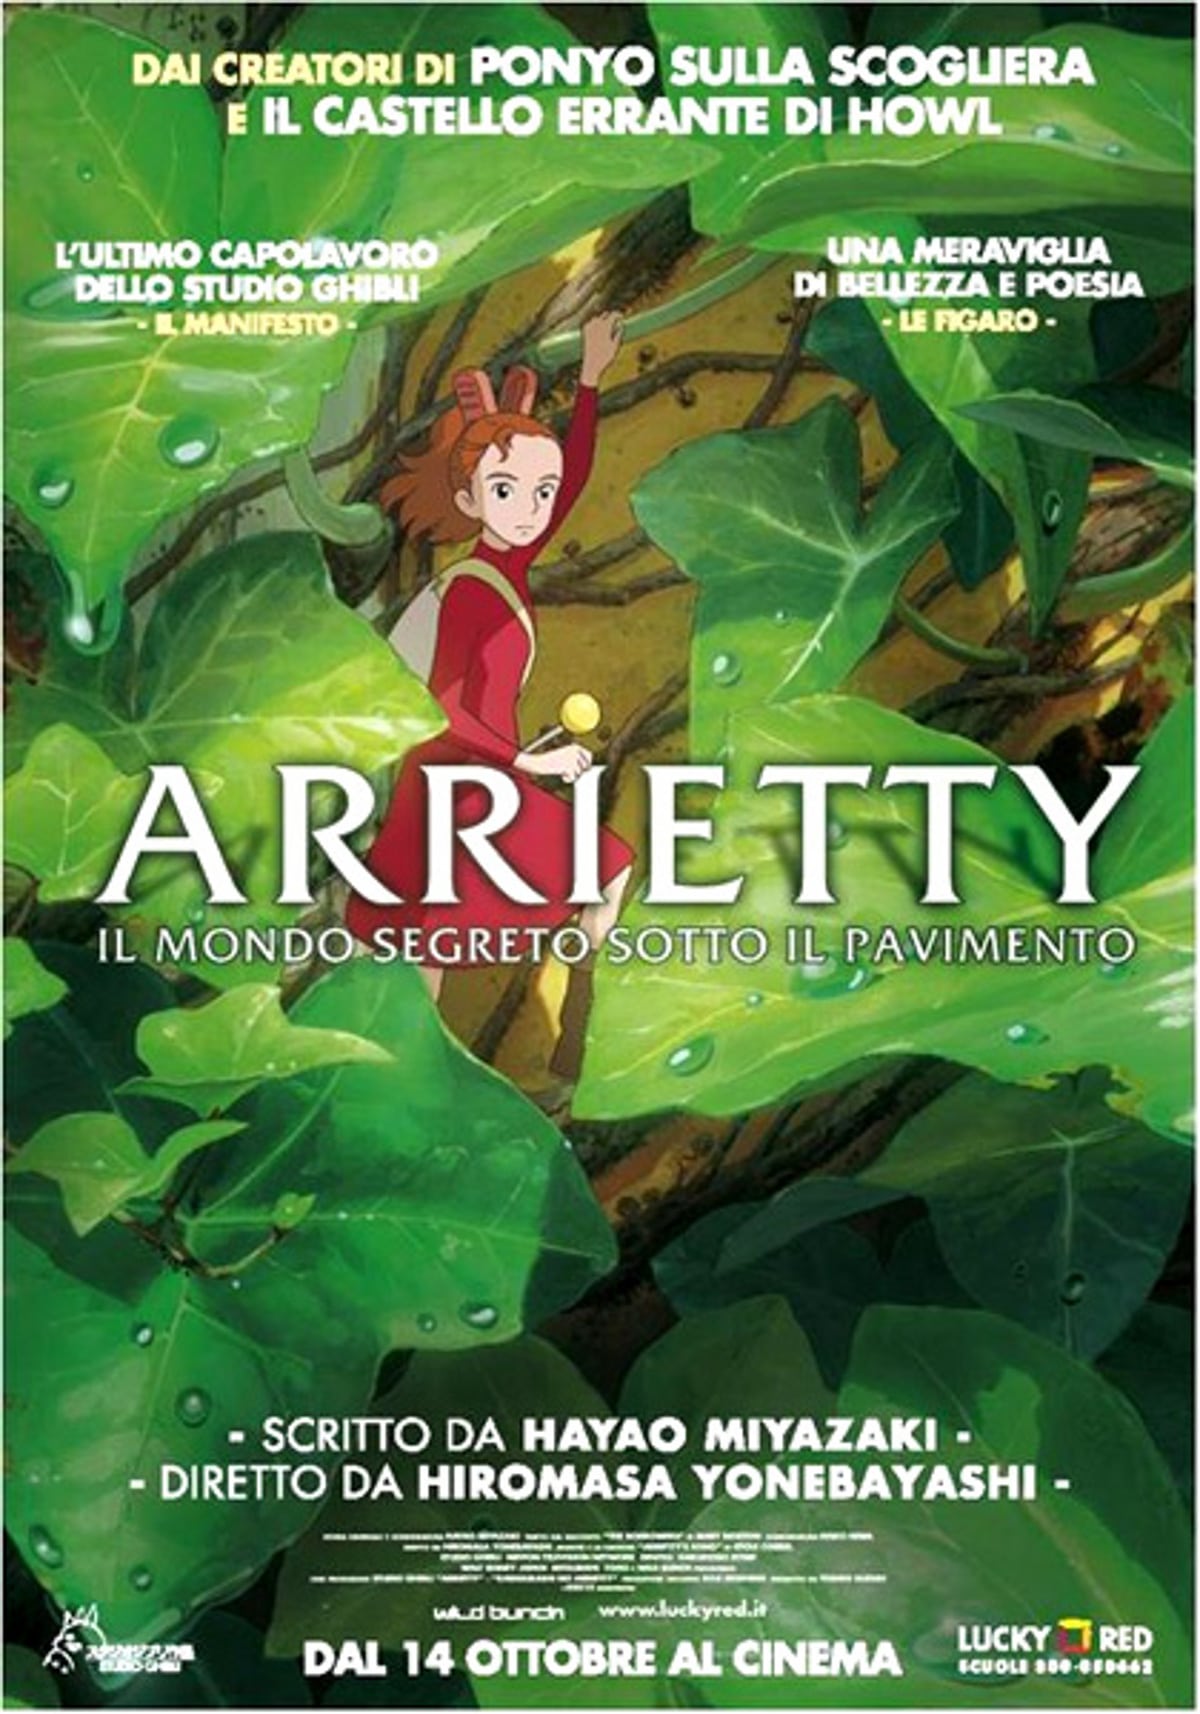 Poster for the movie "Arrietty - Il mondo segreto sotto il pavimento"